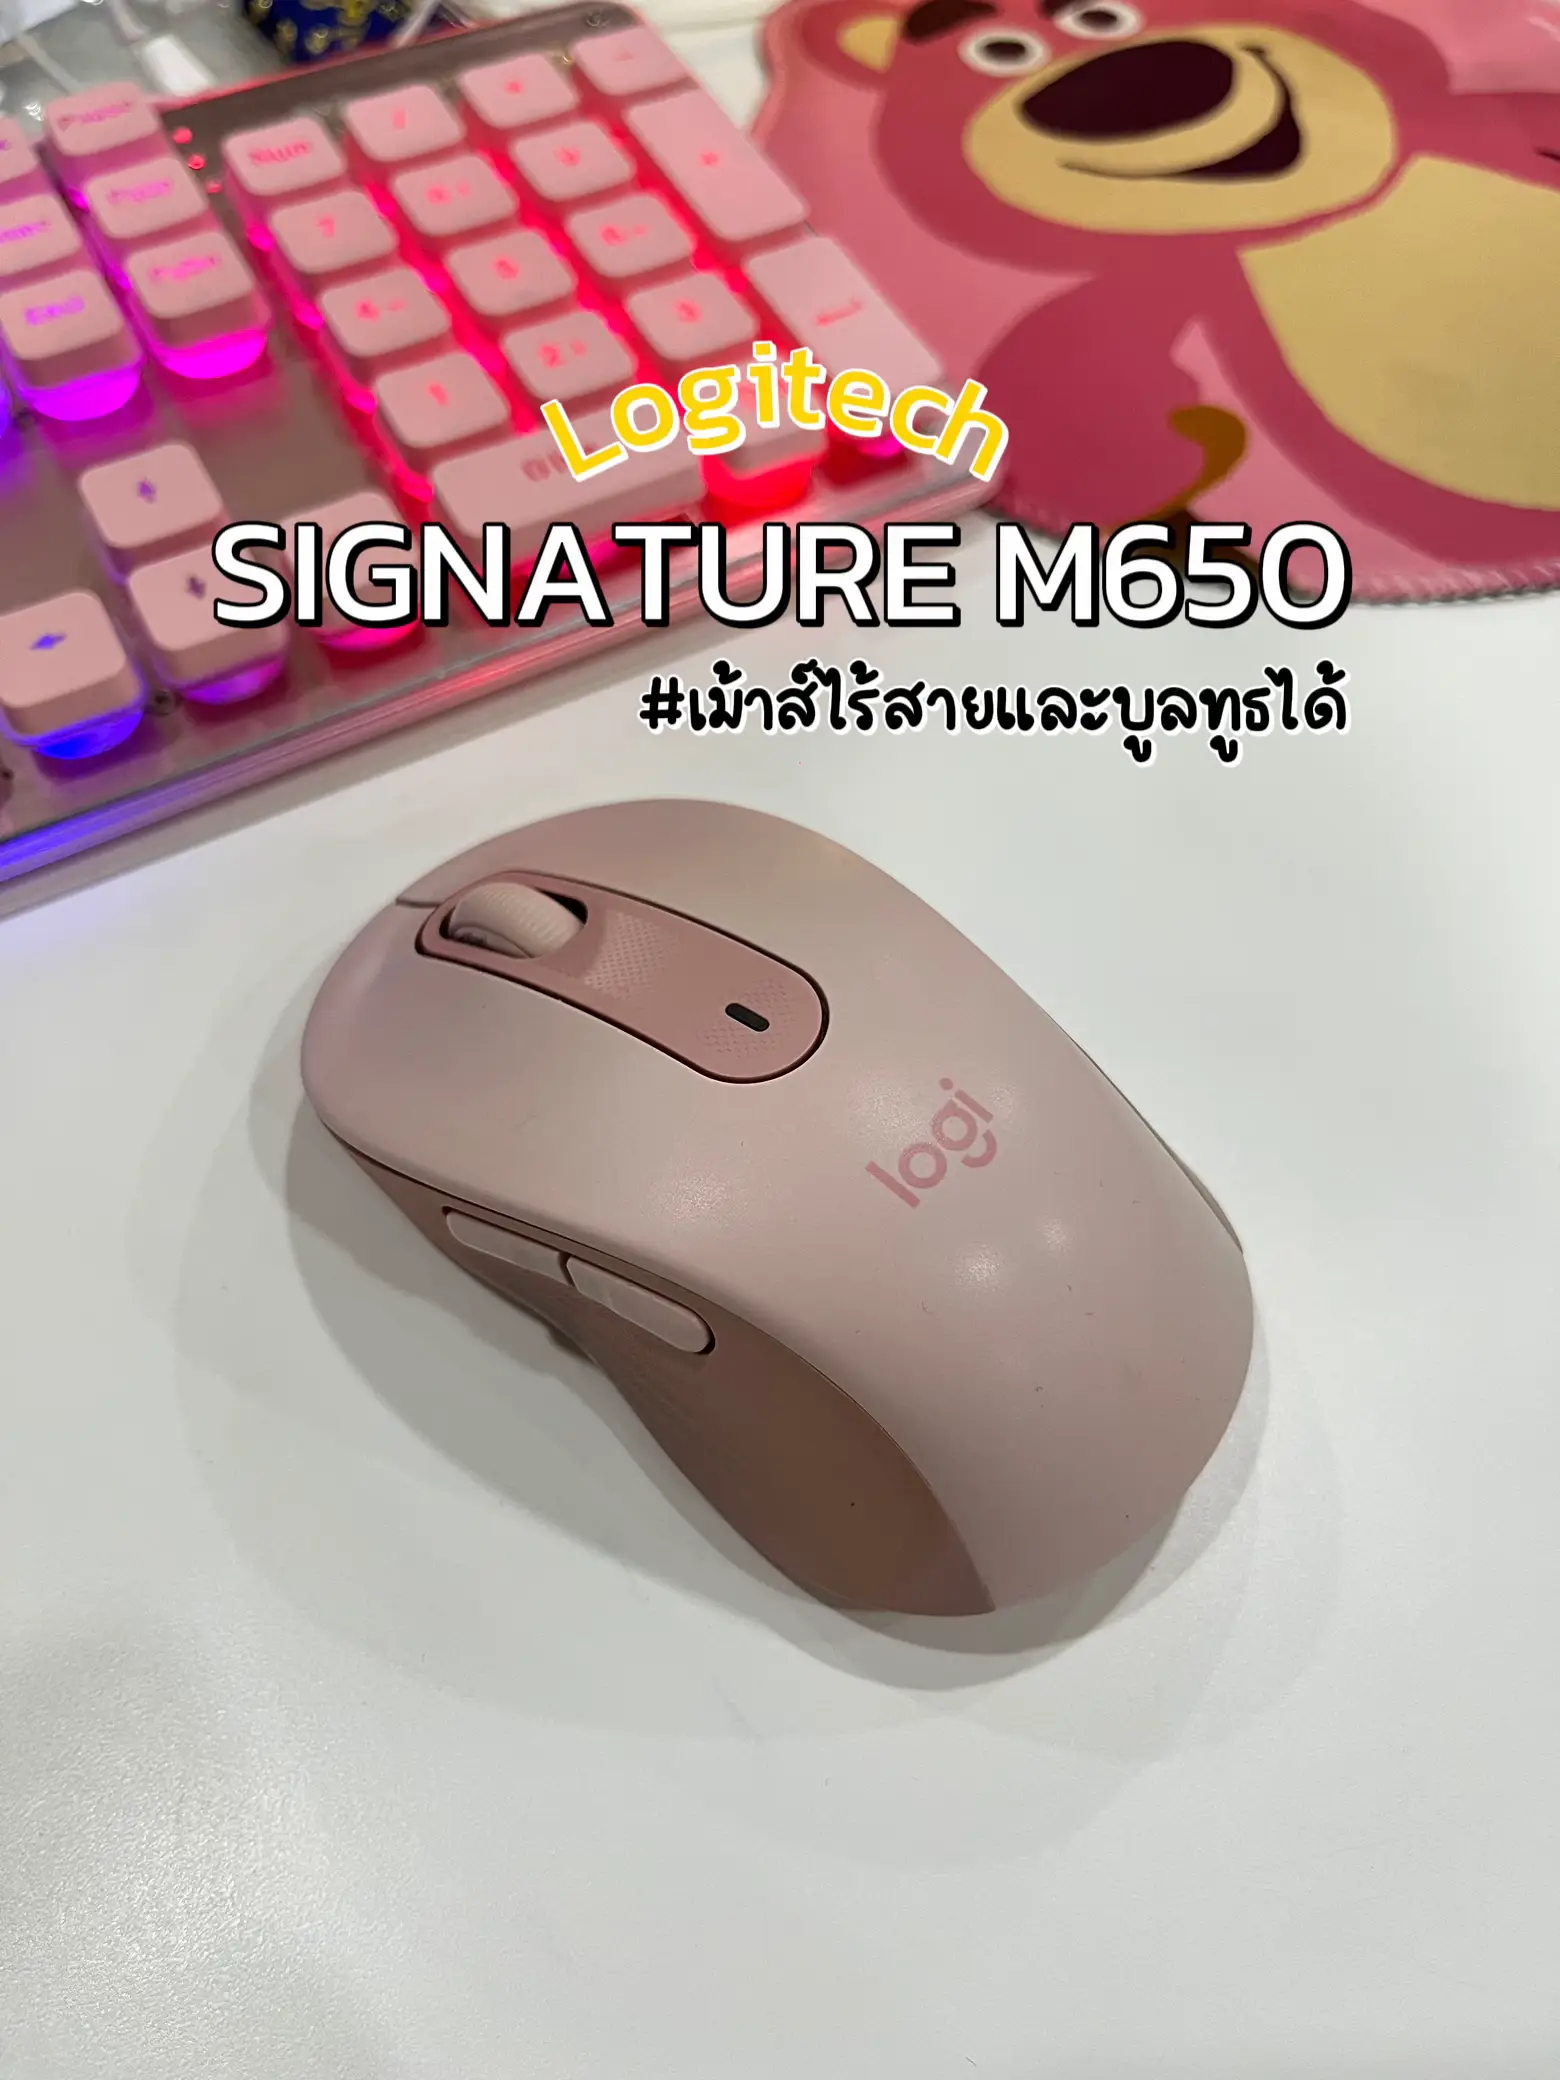 Logitech Signature M650 Mouse Review 